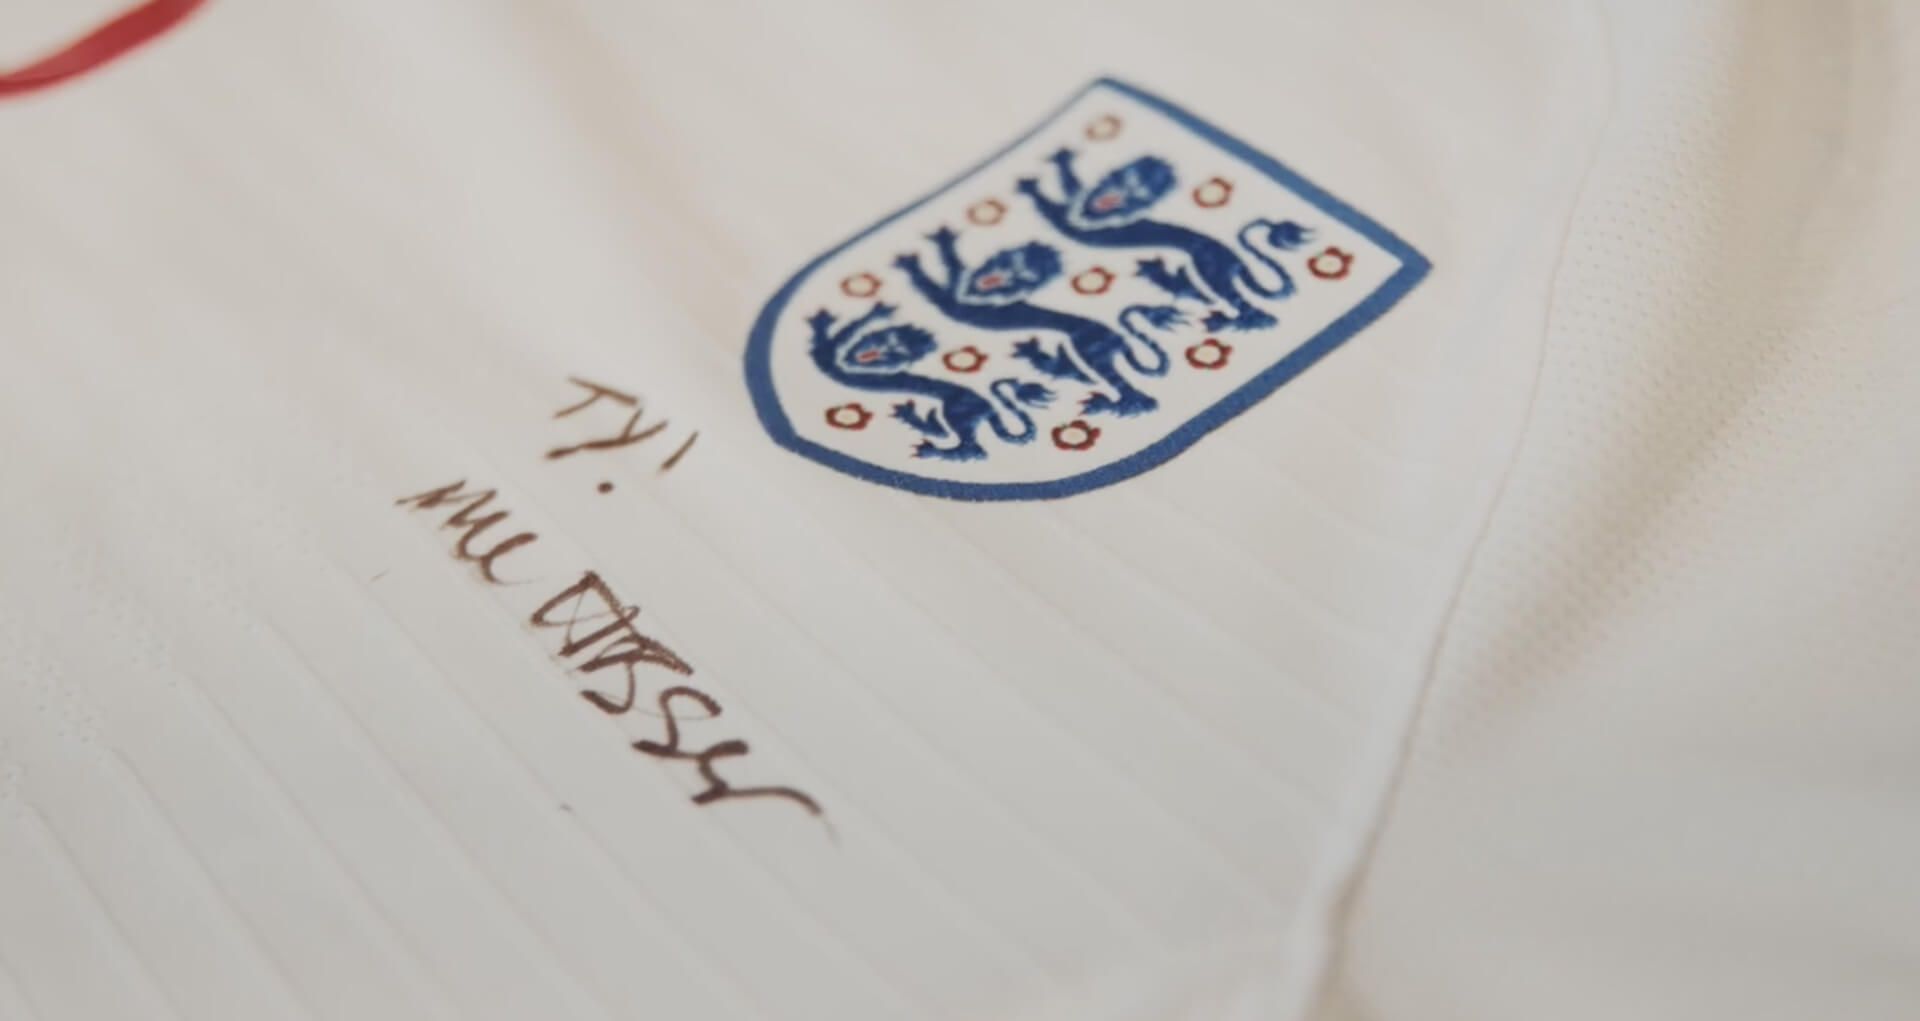 White signed England t-shirt